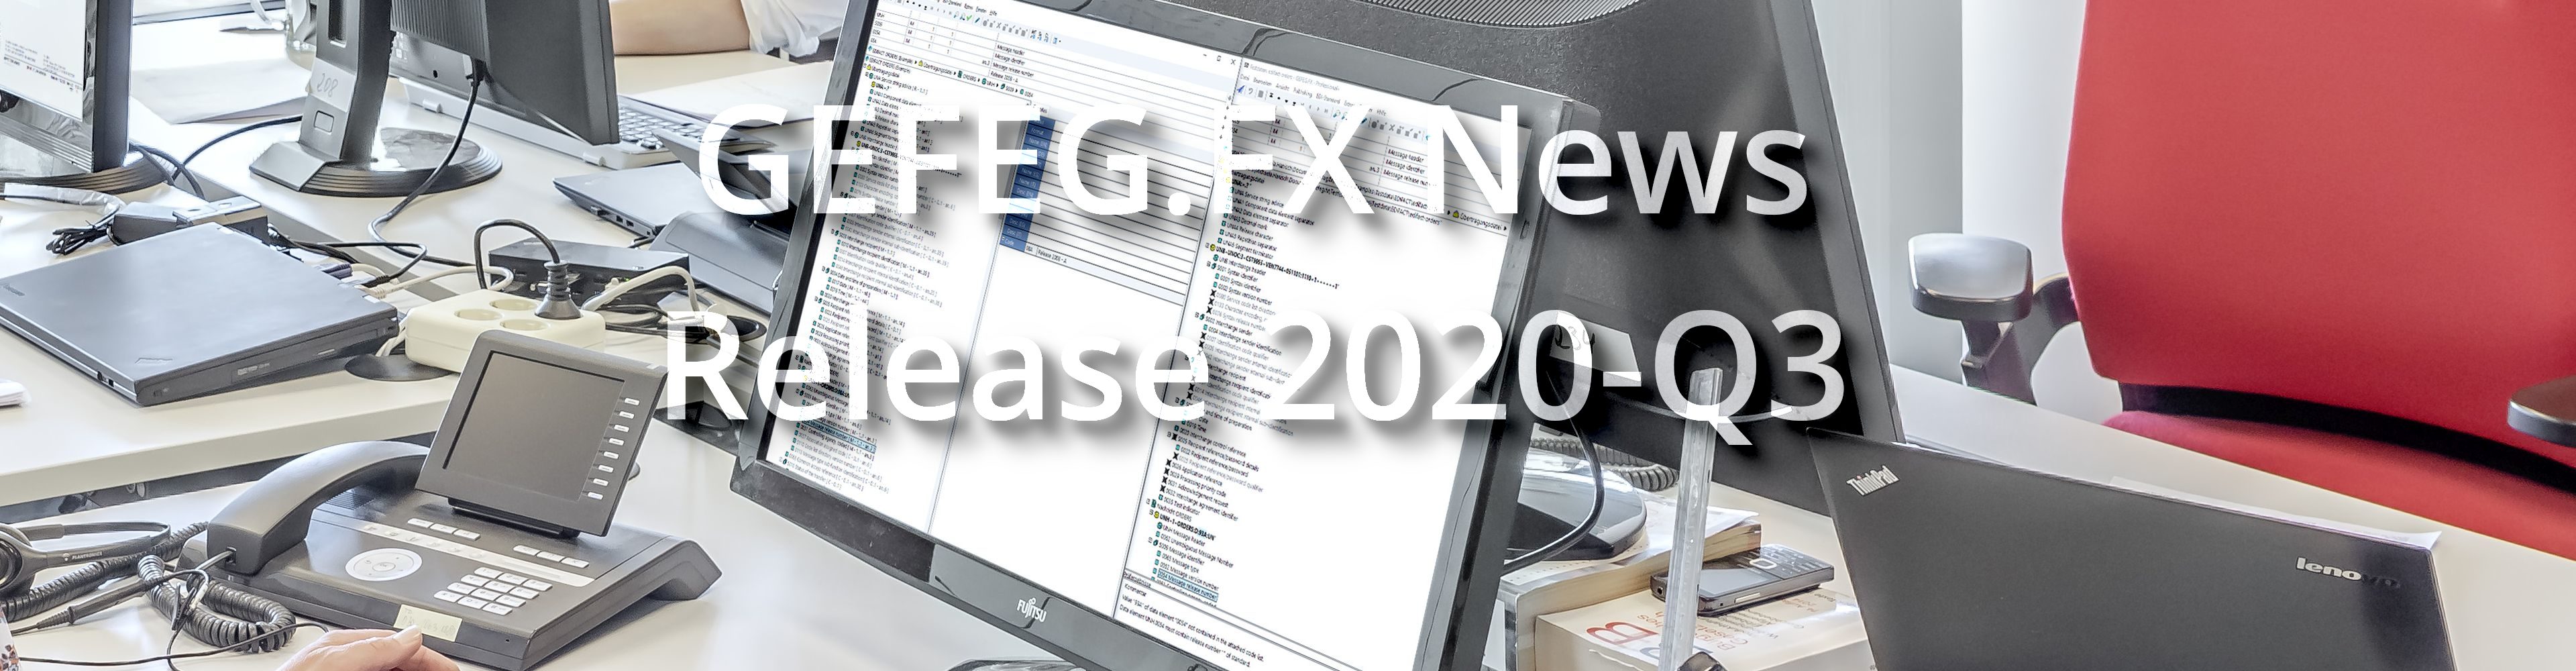 GEFEG.FX Release 2020-Q3